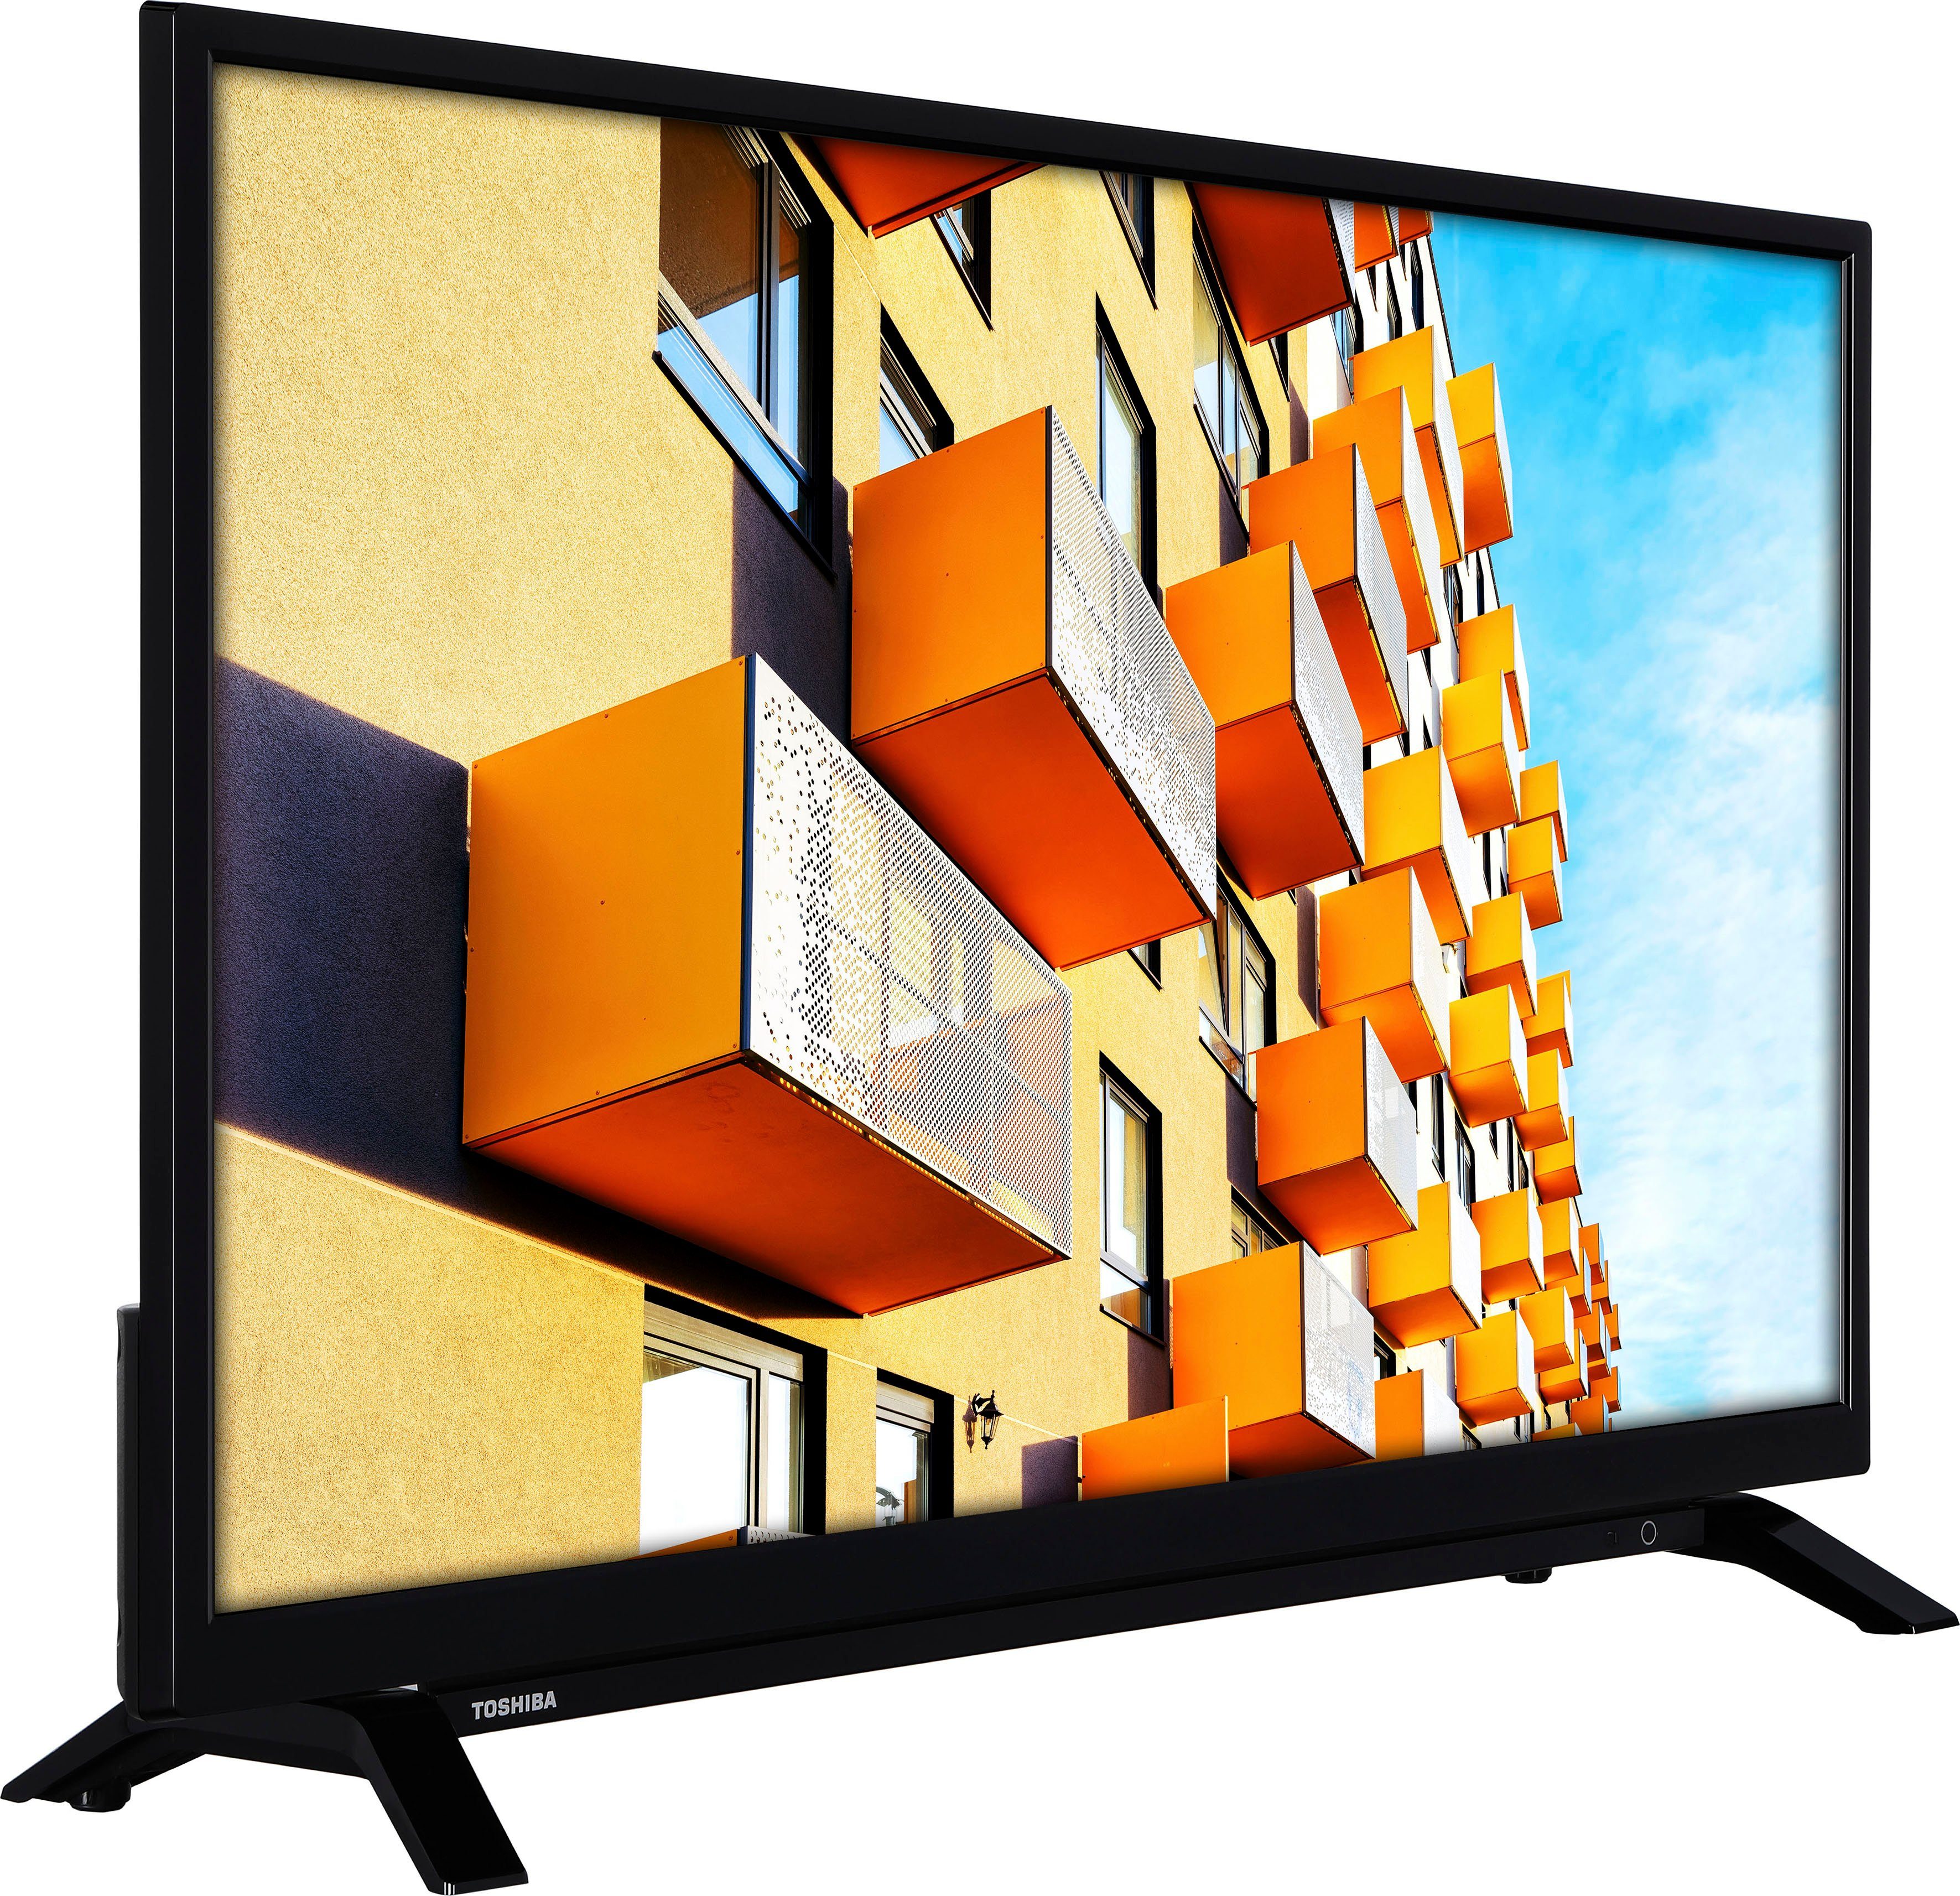 Smart-TV) HD 32W2263DG/2 Toshiba ready, (80 LED-Fernseher cm/32 Zoll,